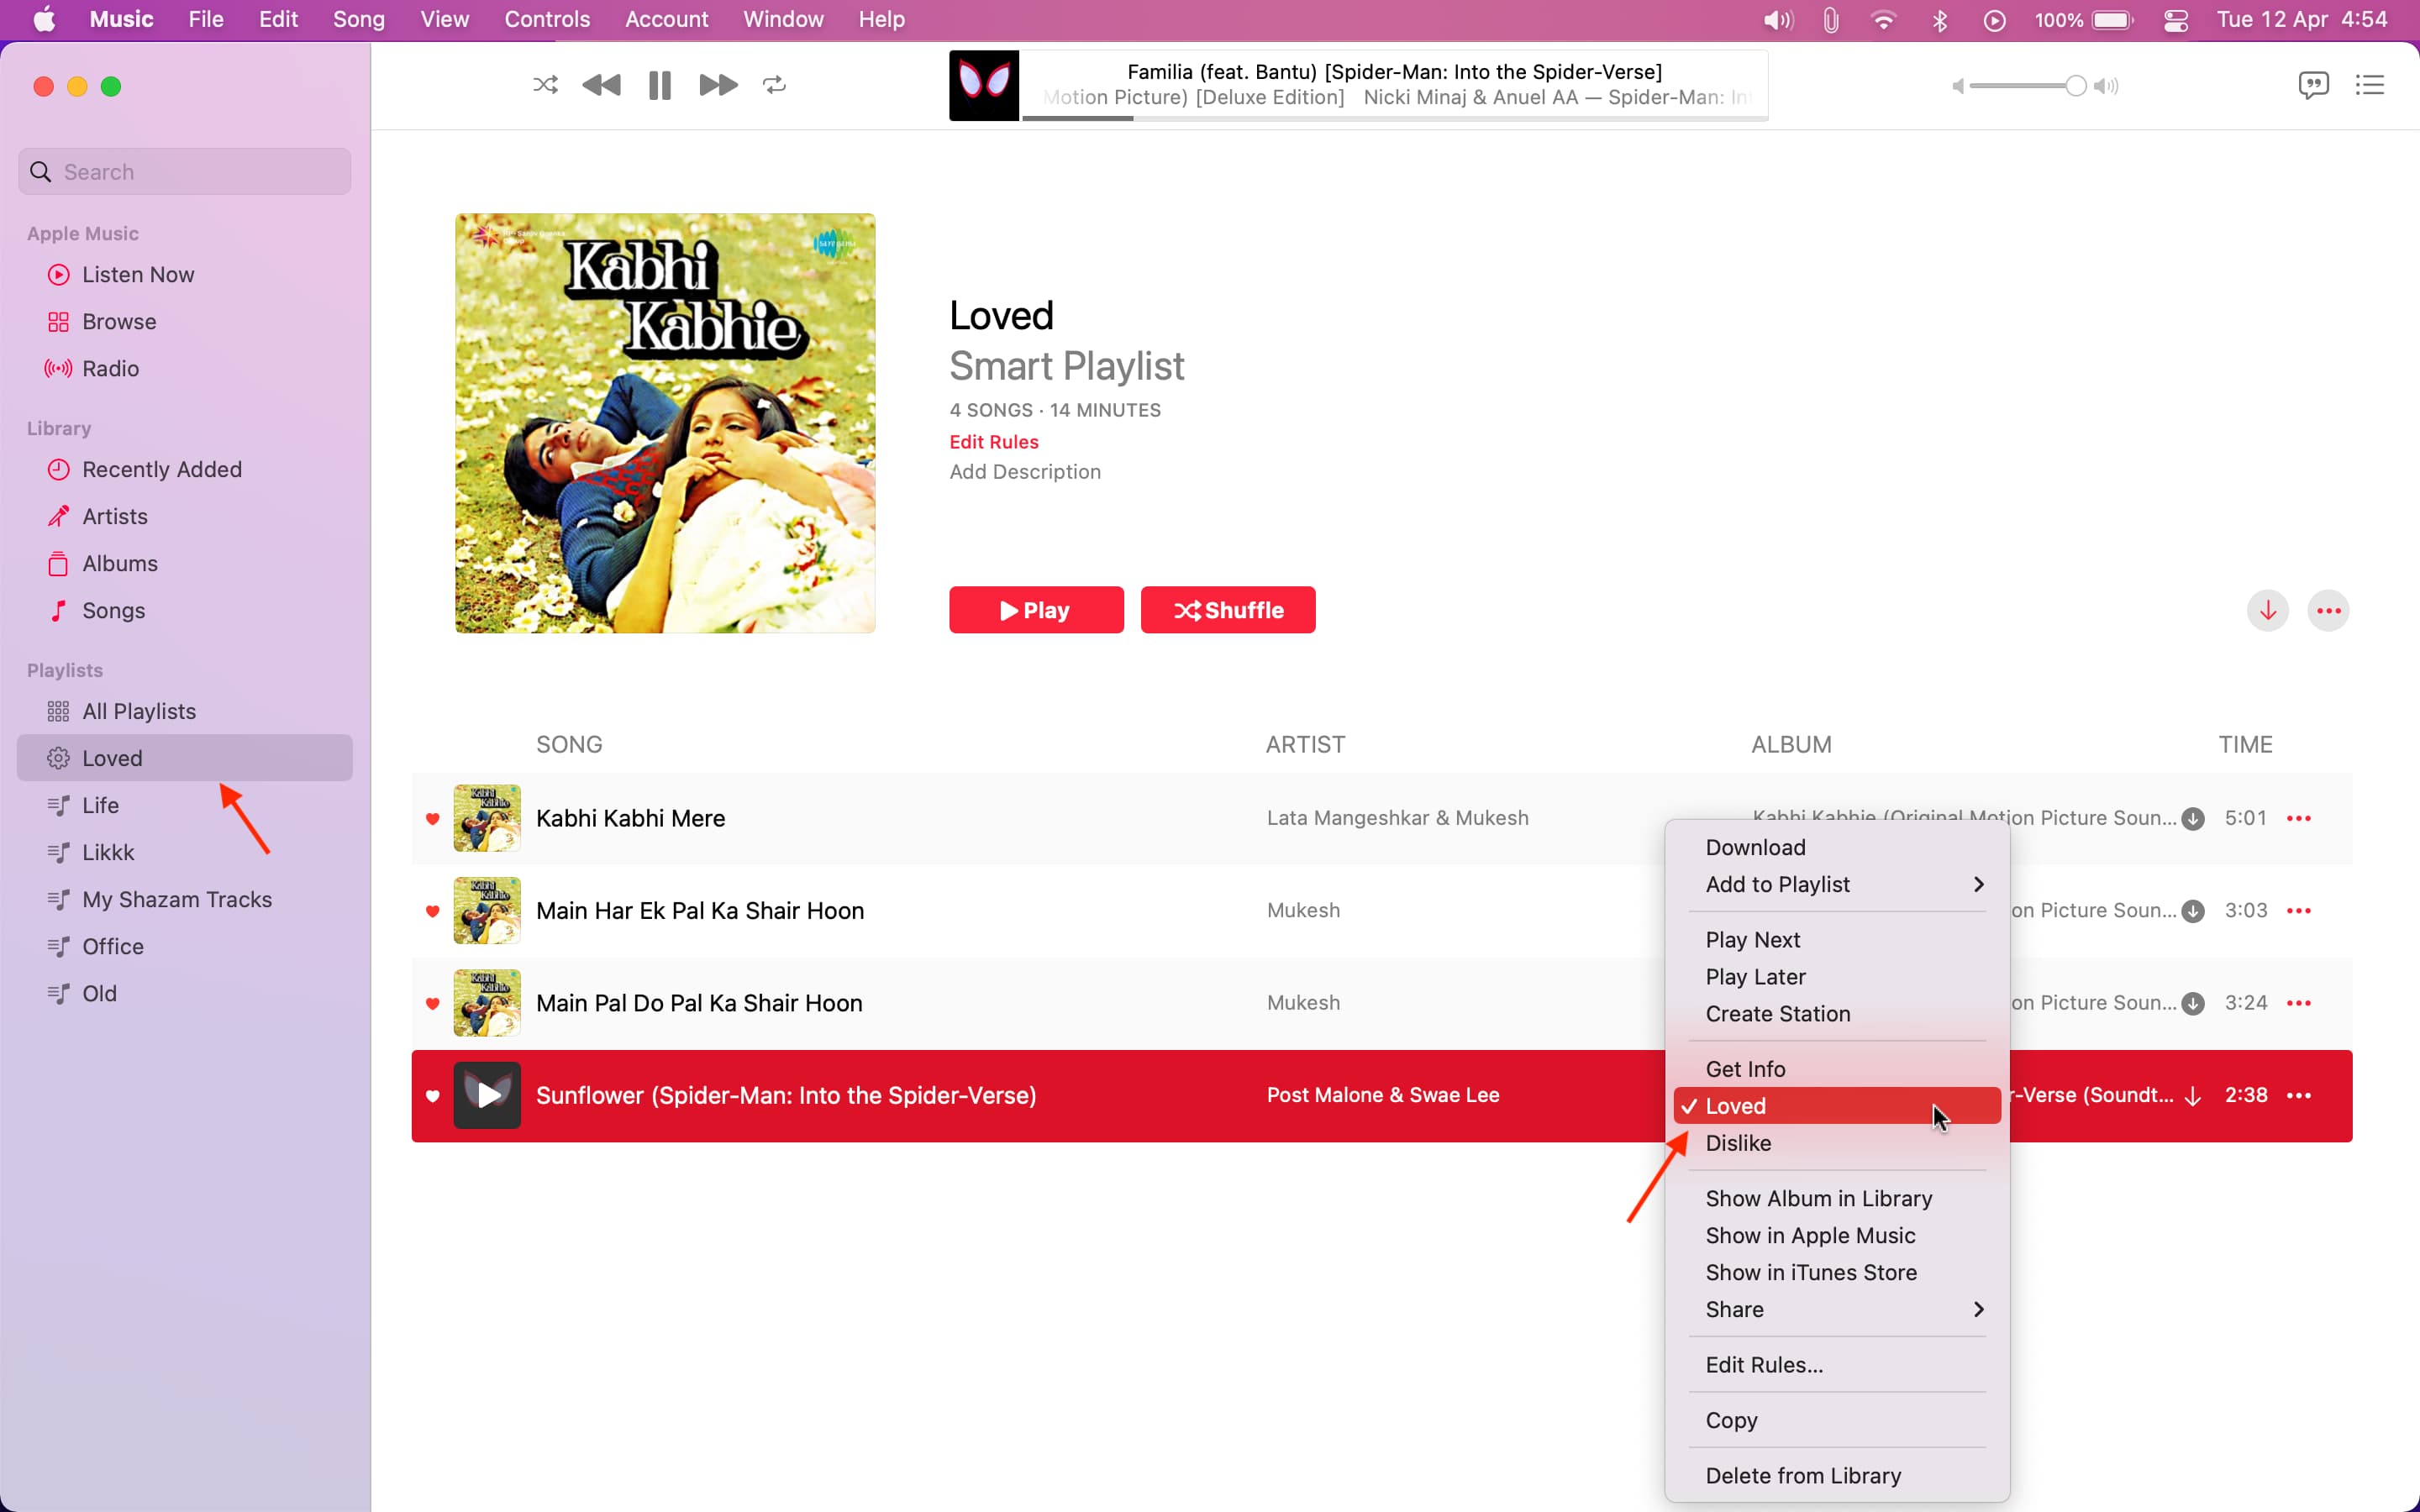 Loved songs in Apple Music on Mac